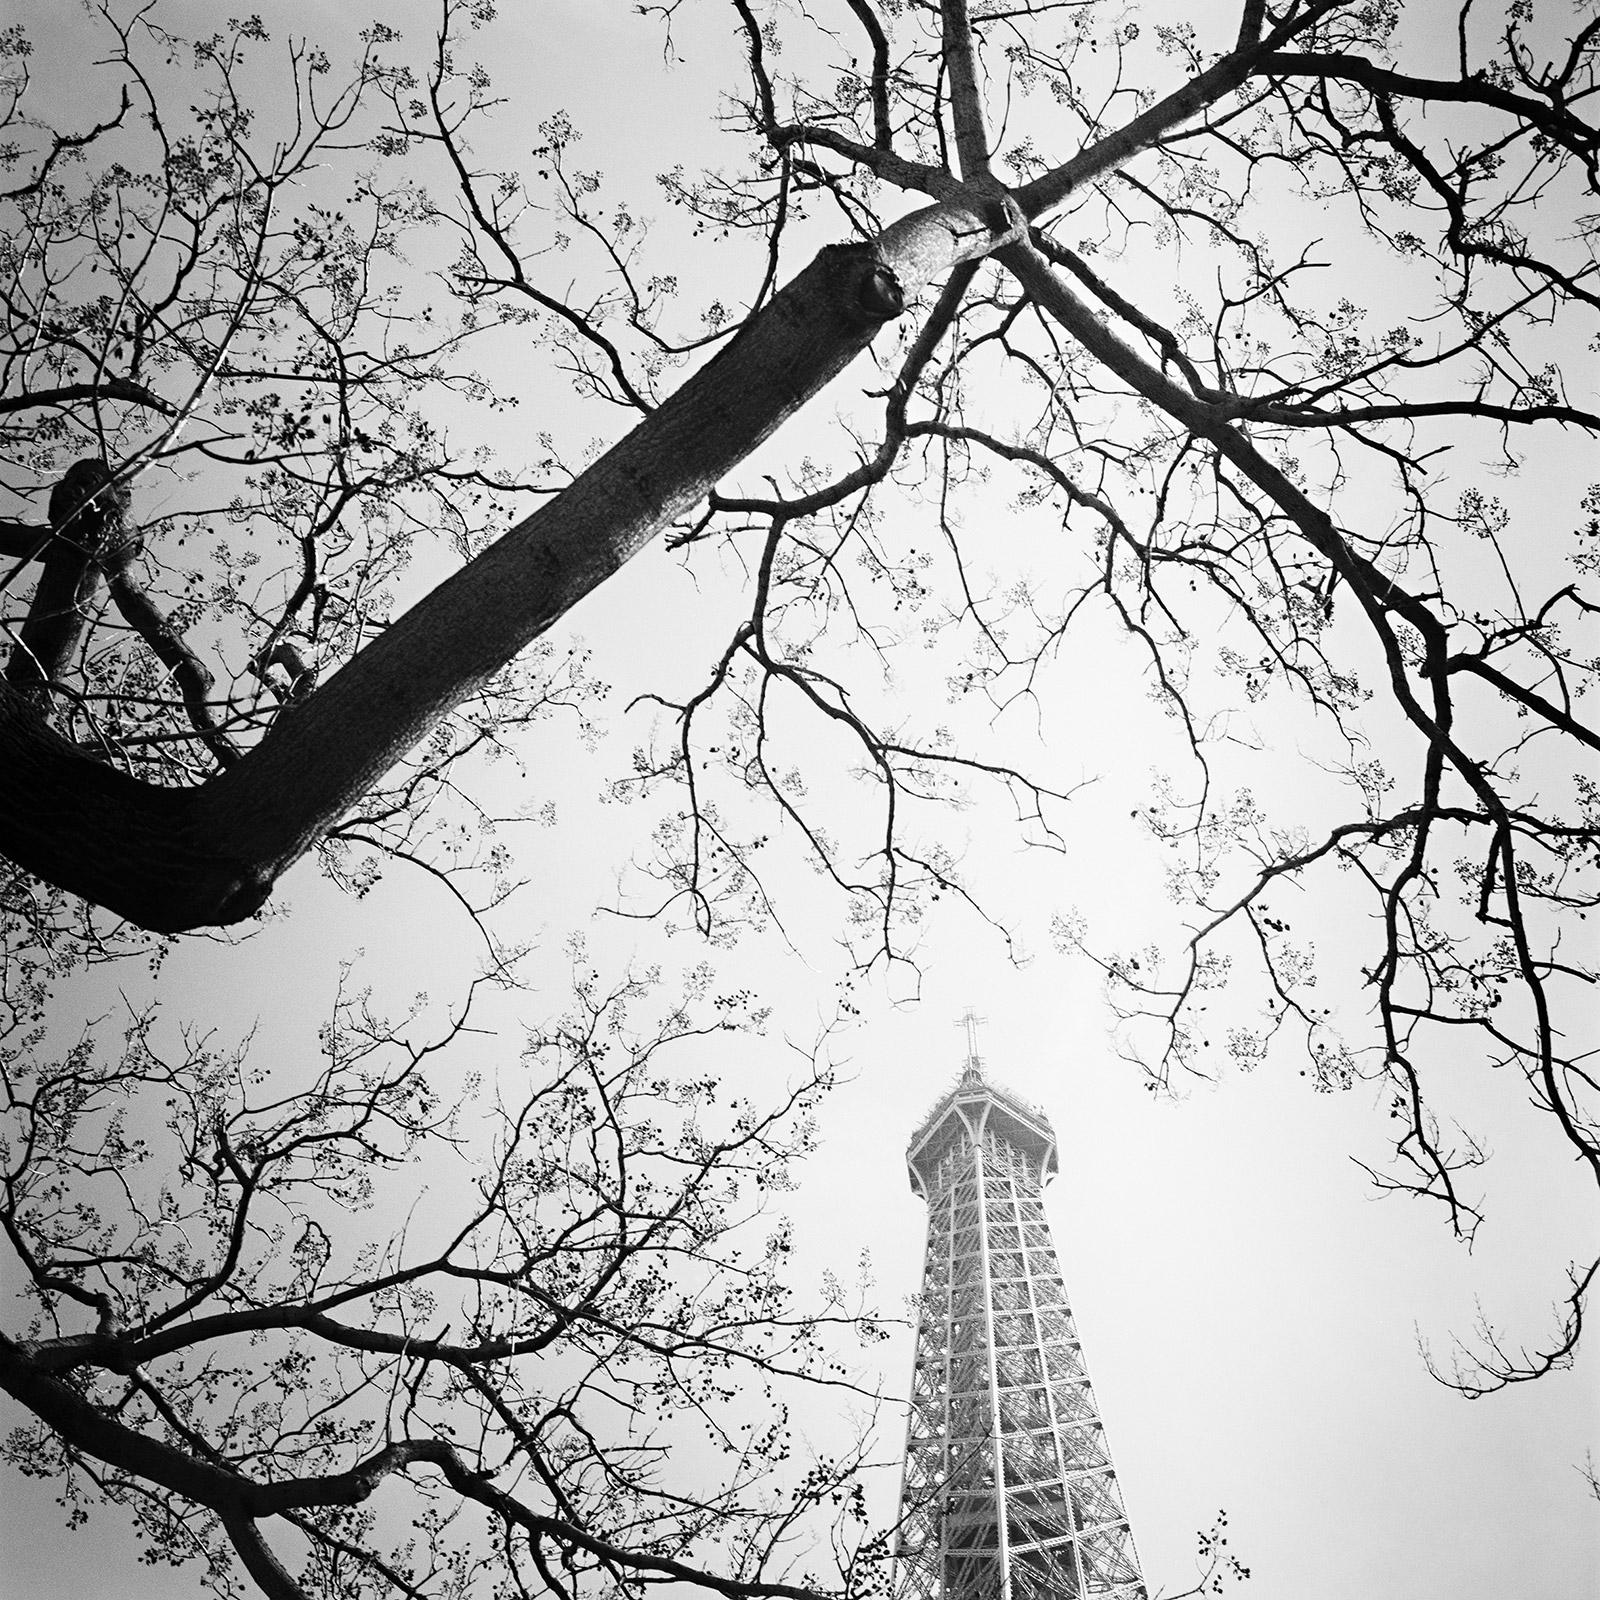 Landscape Photograph Gerald Berghammer - Arbre et Tour Eiffel, Paris, France, photographie de paysage en noir et blanc